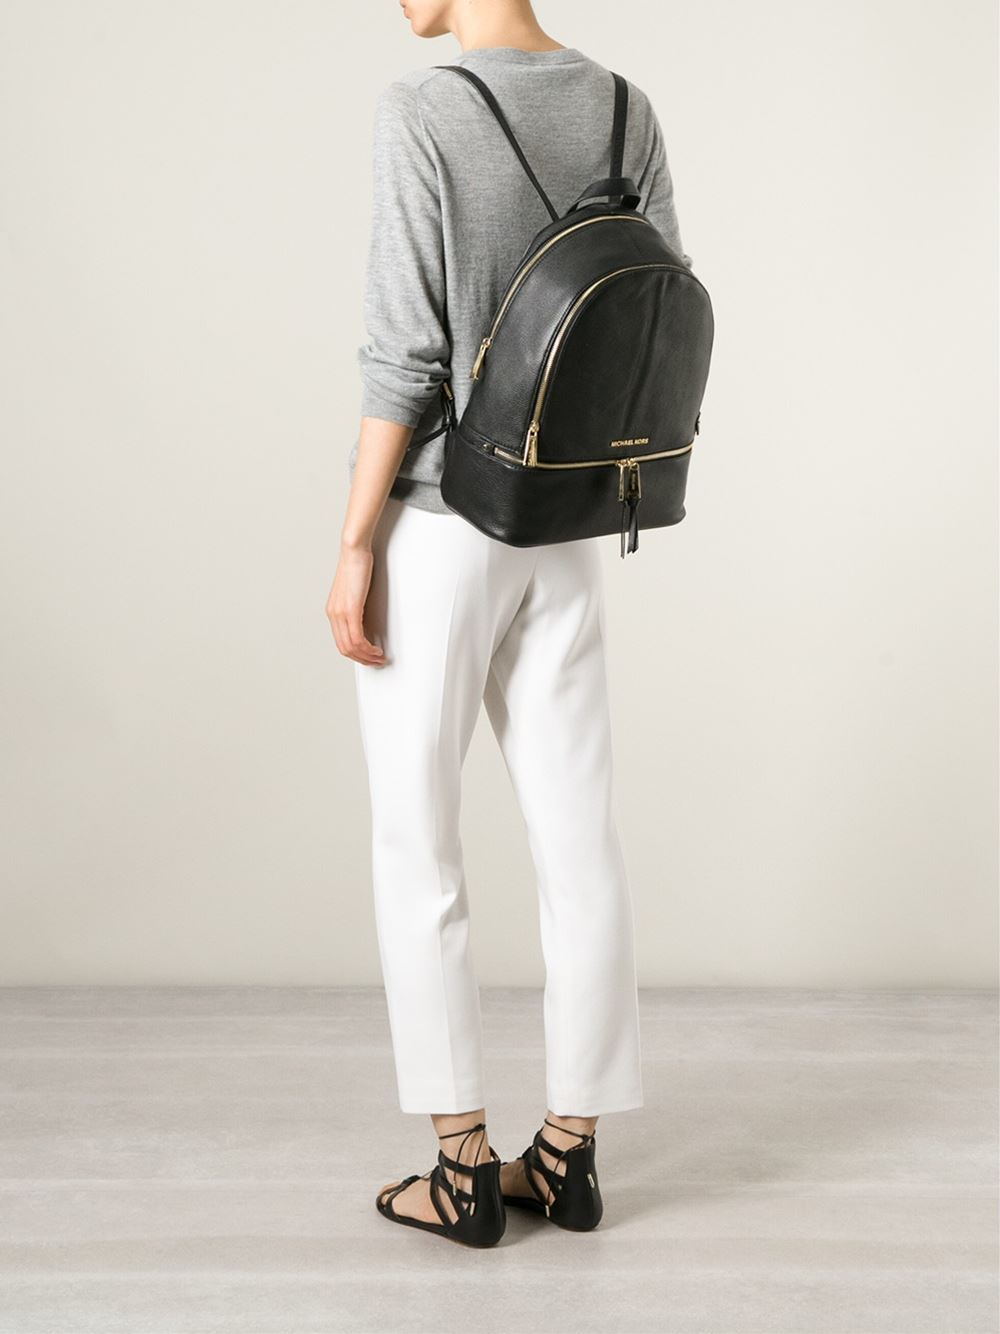 rhea backpack